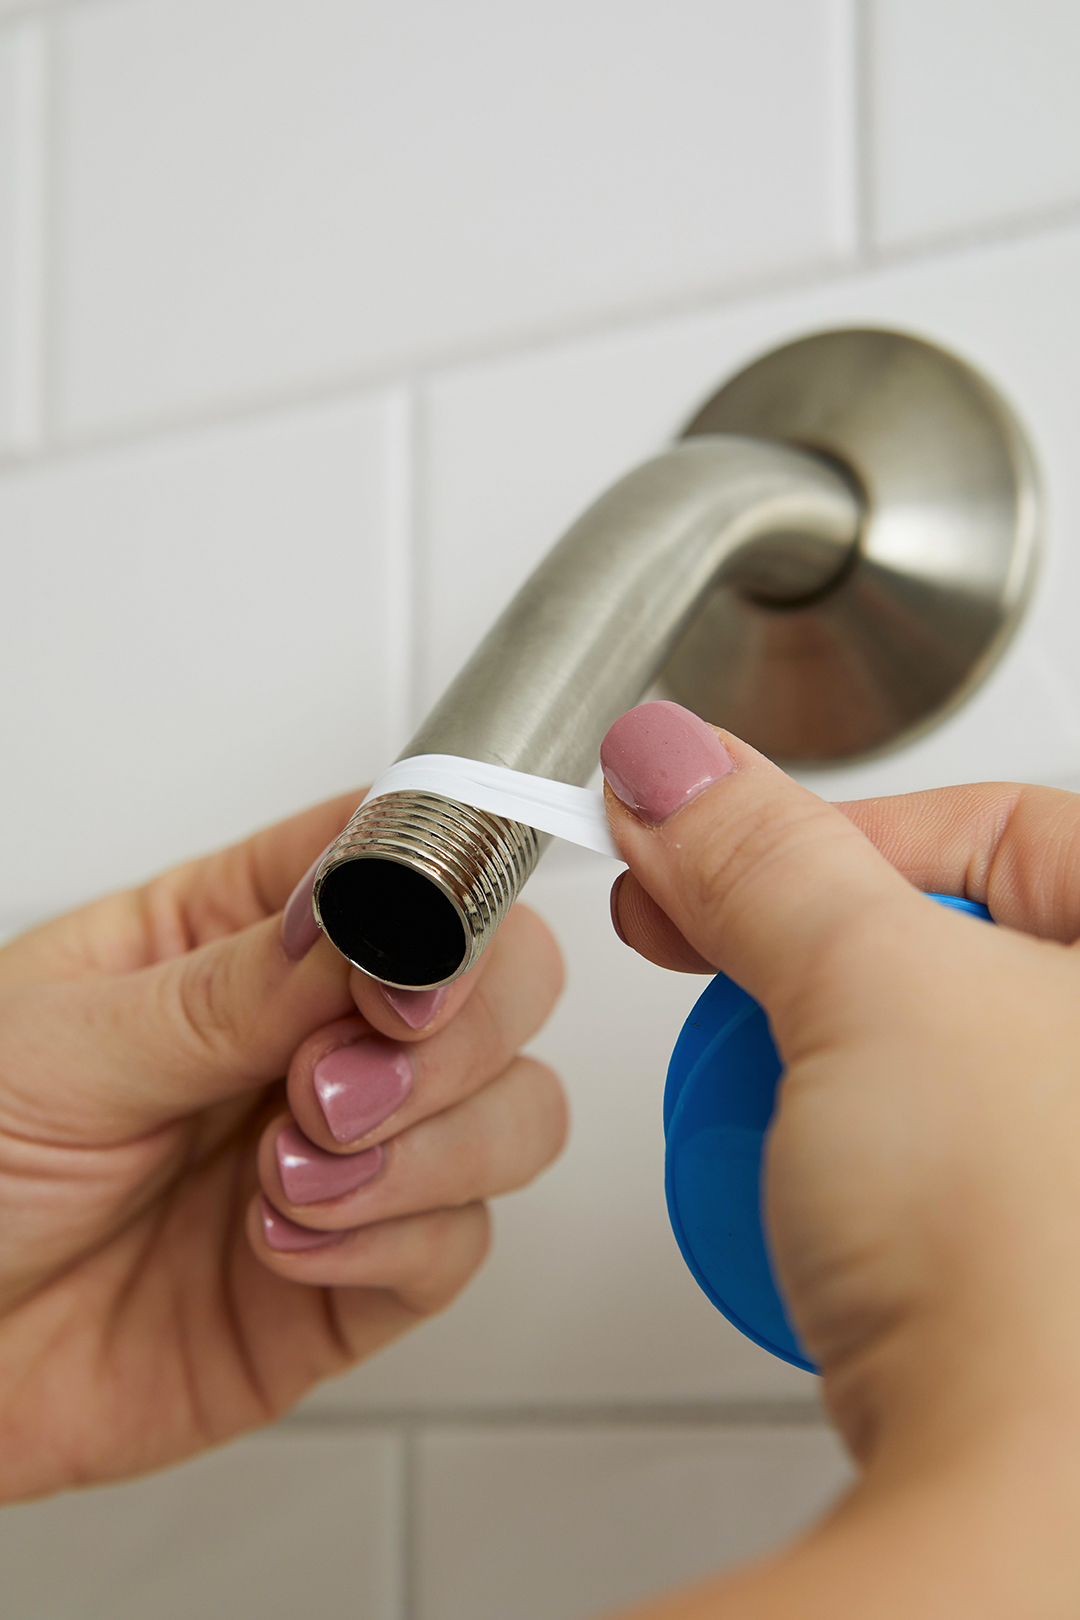 Nếu áp dụng cách tháo vòi thì khi lắp trở lại bạn nhớ dùng băng keo giấy quấn quanh trước để cố định vòi tốt hơn.